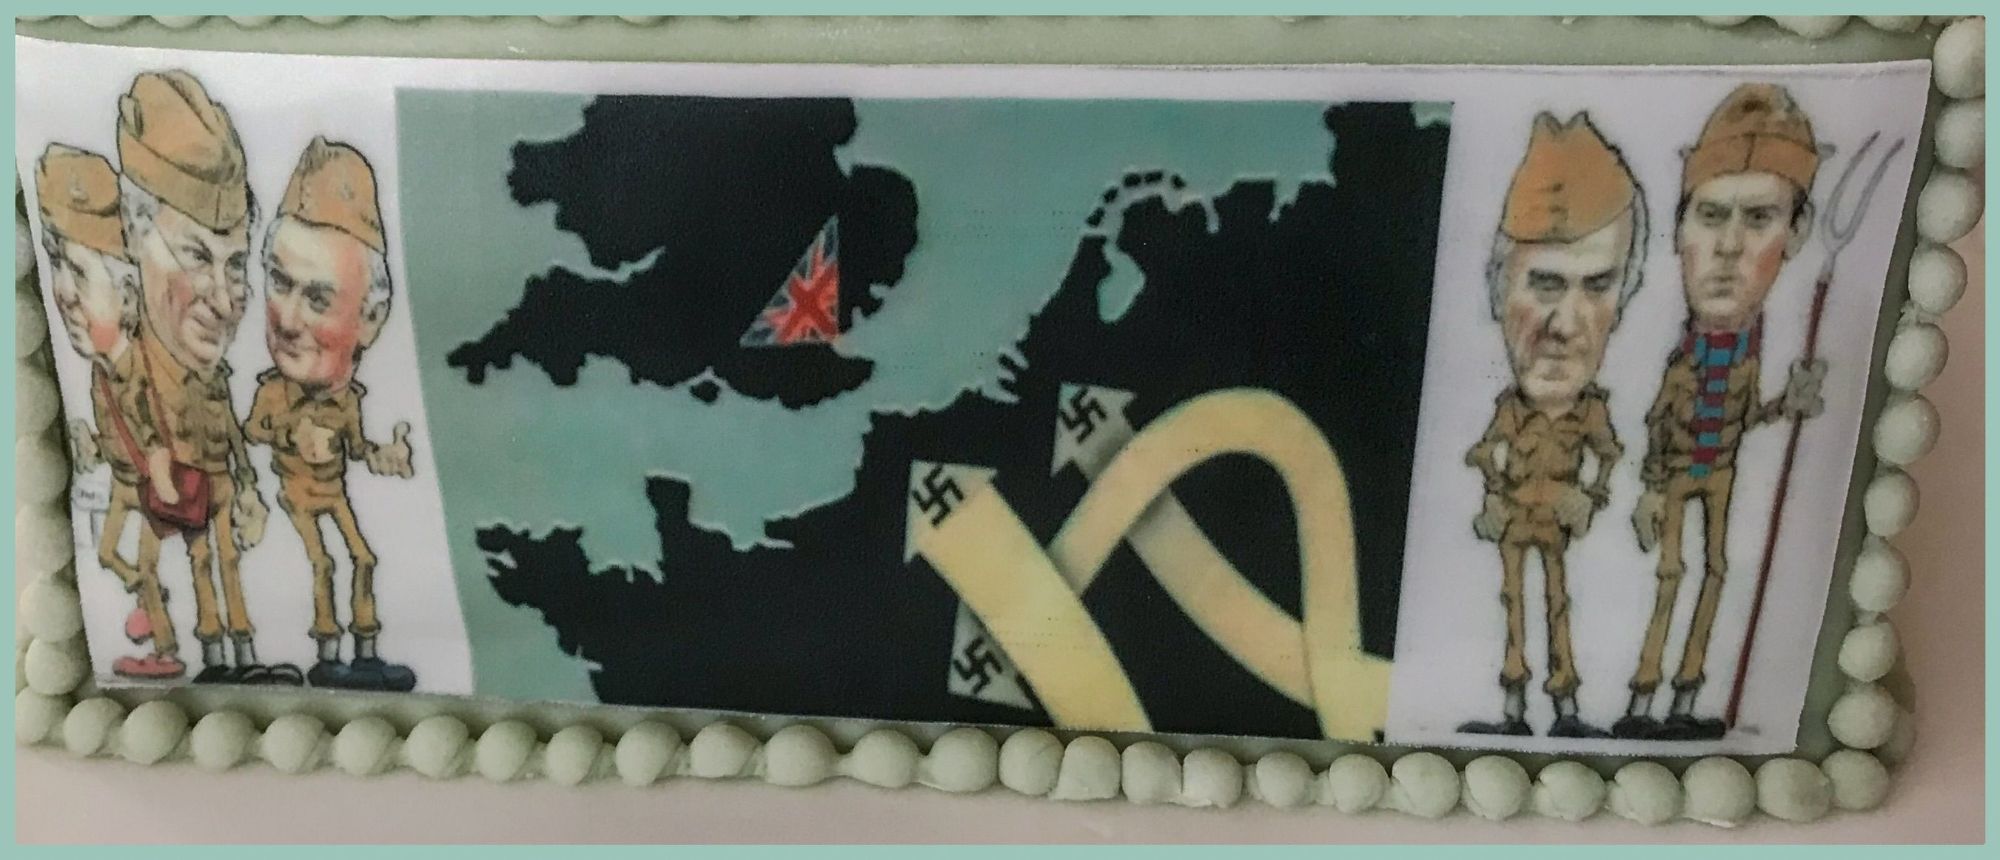 dads army cake 2